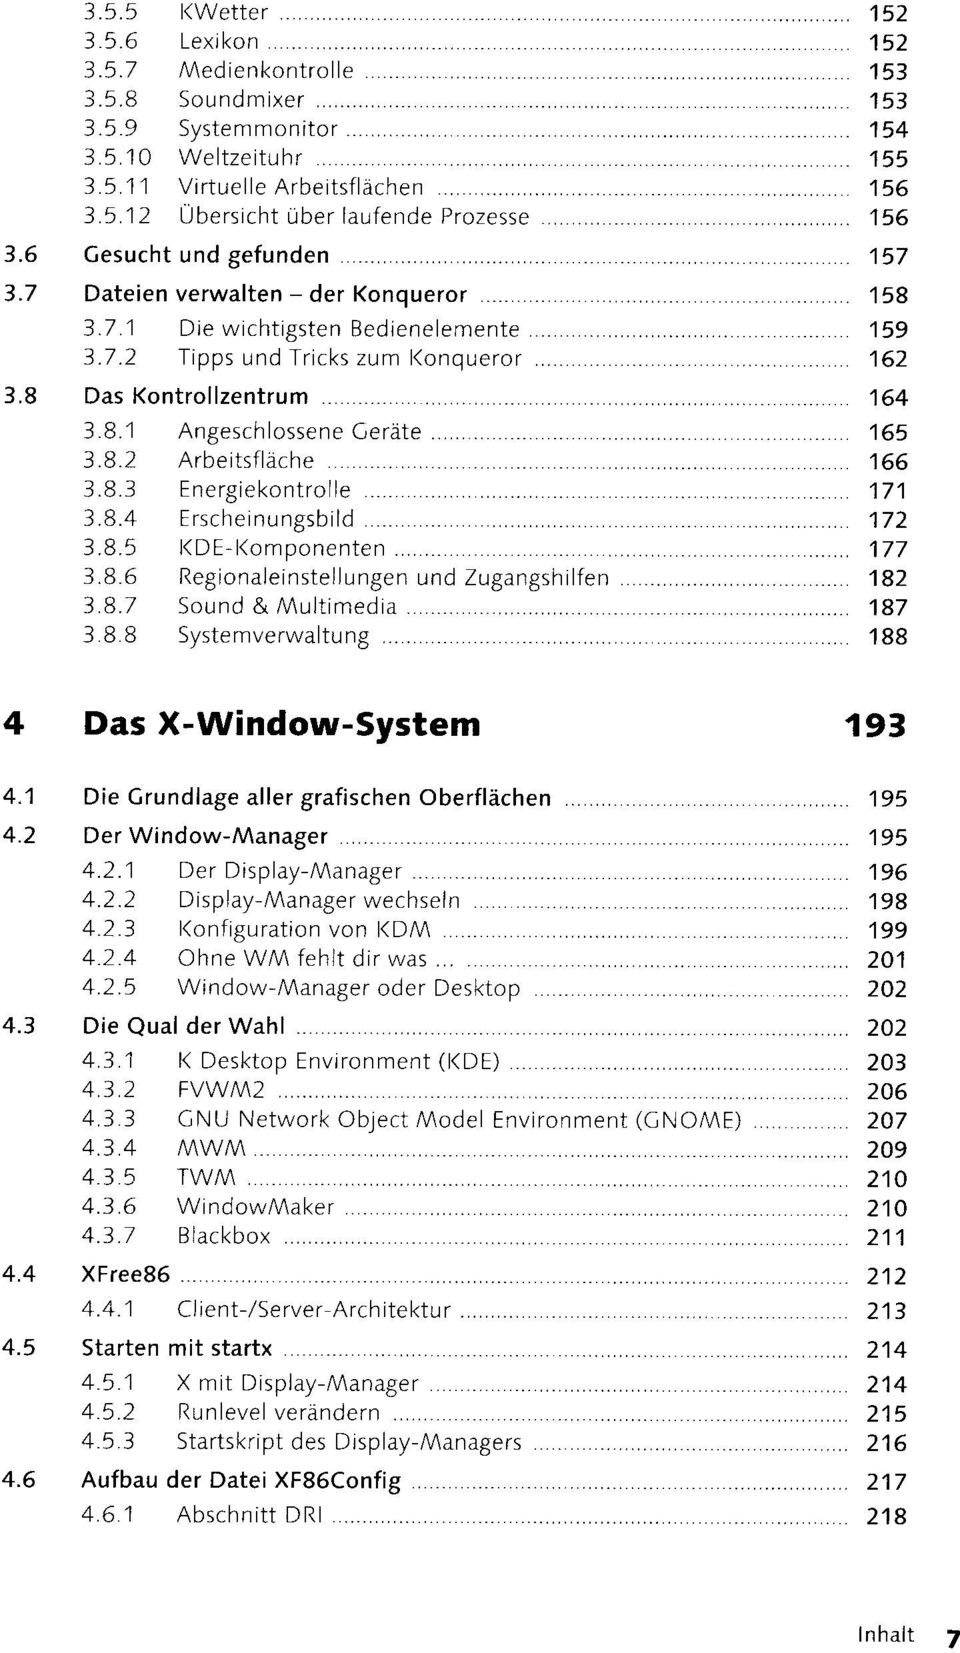 8.2 Arbeitsfläche 166 3.8.3 Energiekontrolle 171 3.8.4 Erscheinungsbild 172 3.8.5 KDE-Komponenten 177 3.8.6 Regionaleinstellungen und Zugangshilfen 182 3.8.7 Sound & Multimedia 187 3.8.8 System Verwaltung 188 4 Das X-Window-System 193 4.